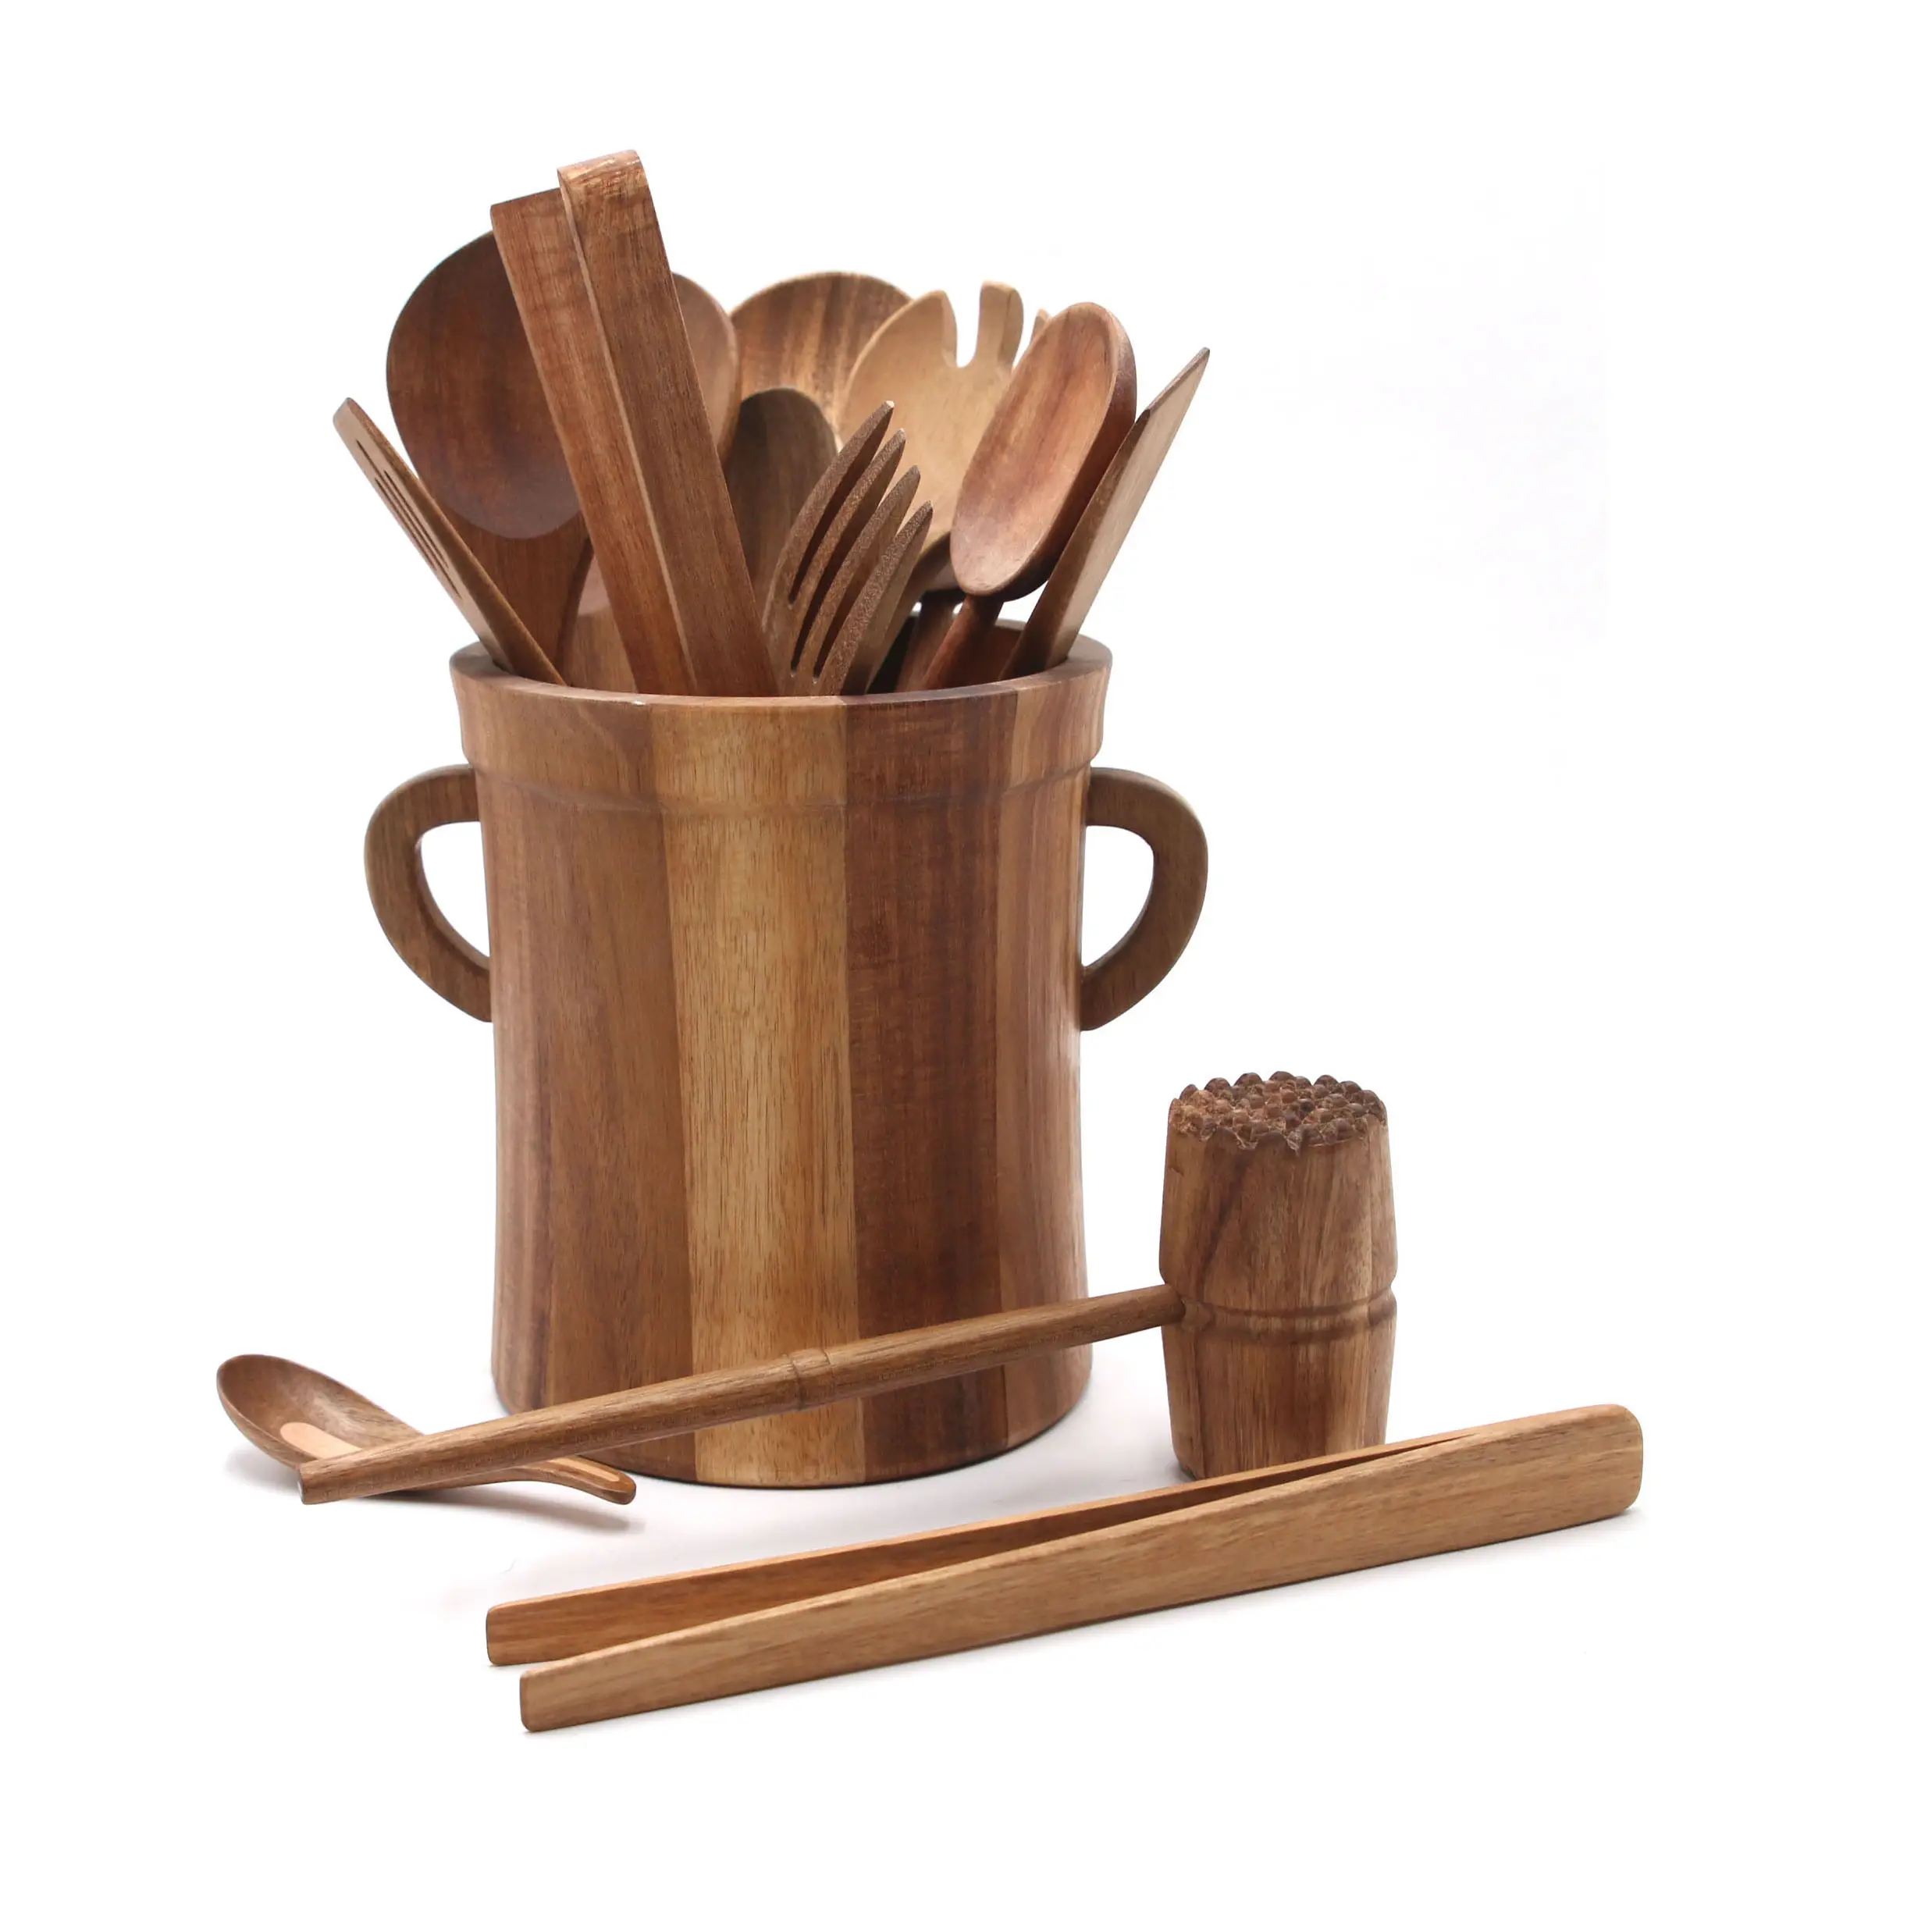 مستلزمات المطبخ أدوات الطبخ مجموعة من 10 قطع من خشب الساج المقاوم للالتصاق أدوات المطبخ